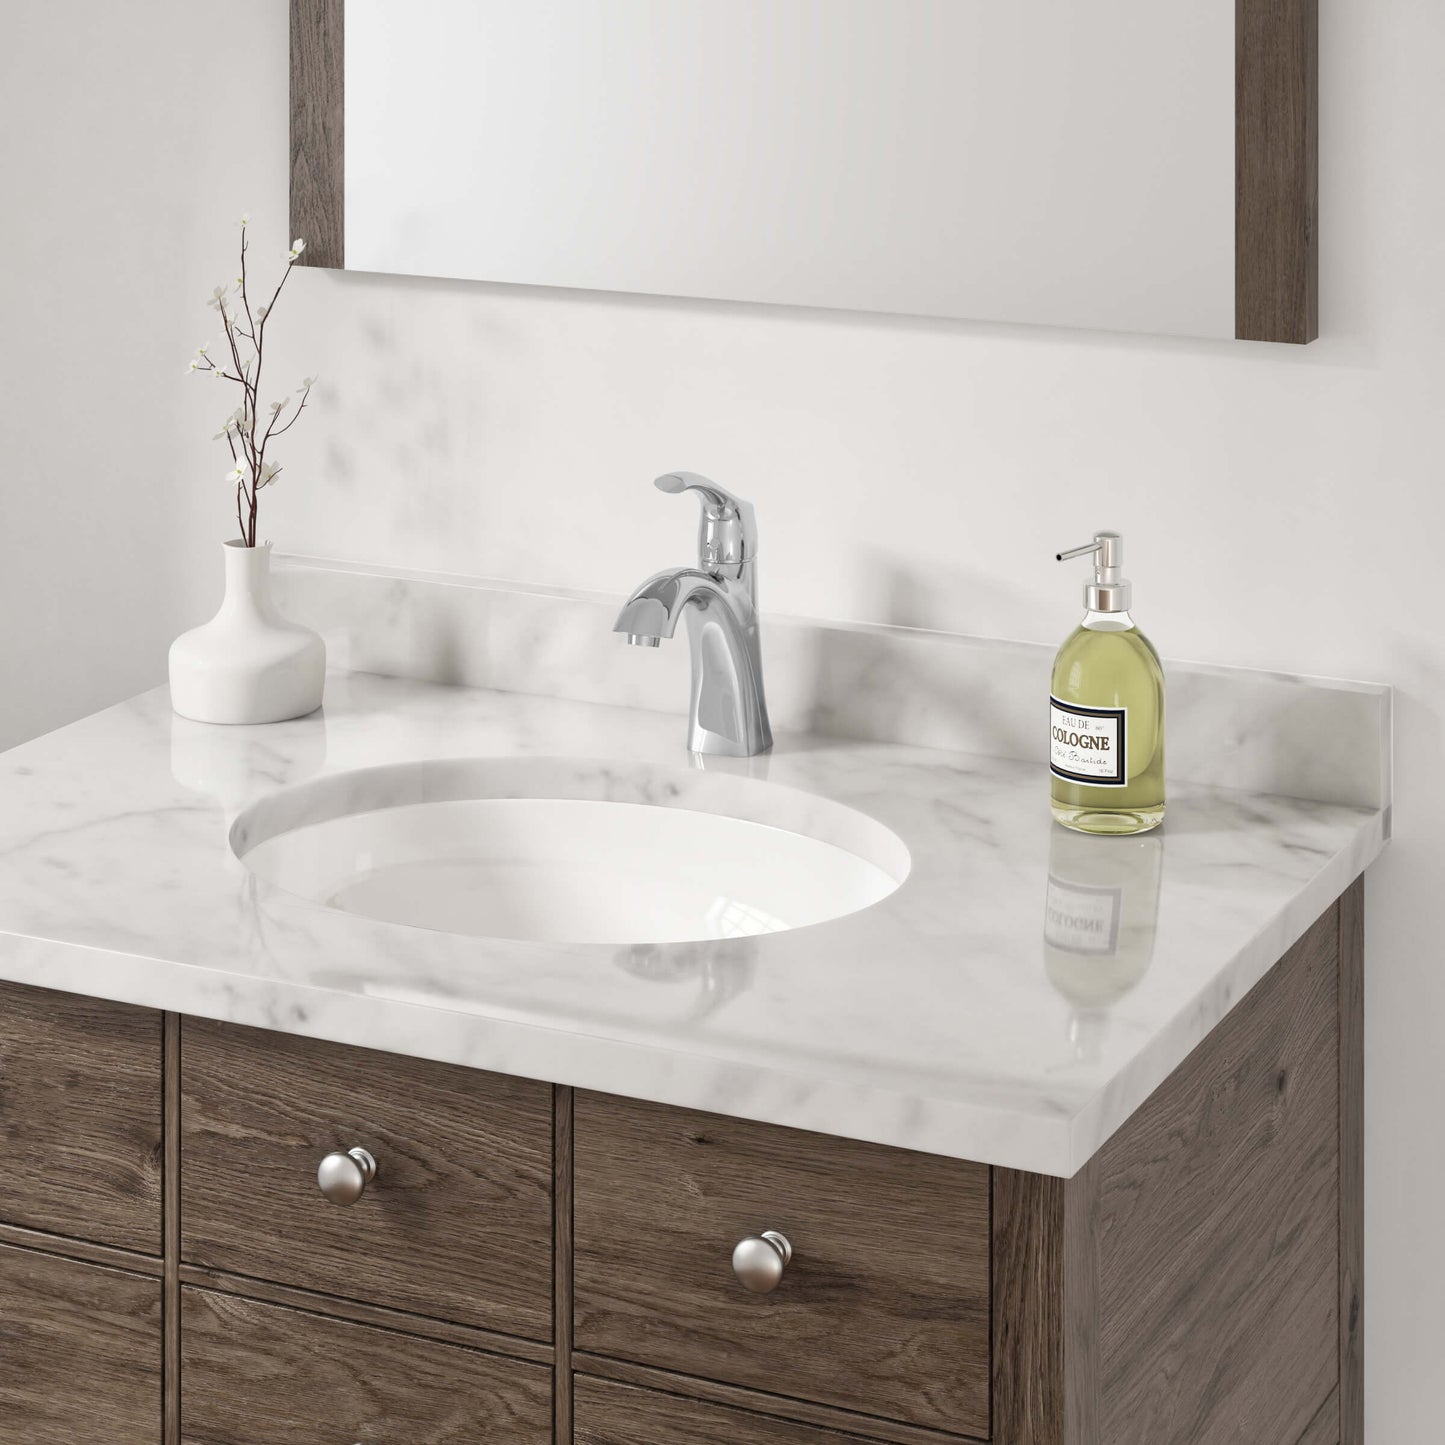 ADA-VCS-1417-O Oval Porcelain Undermount Bathroom Sink